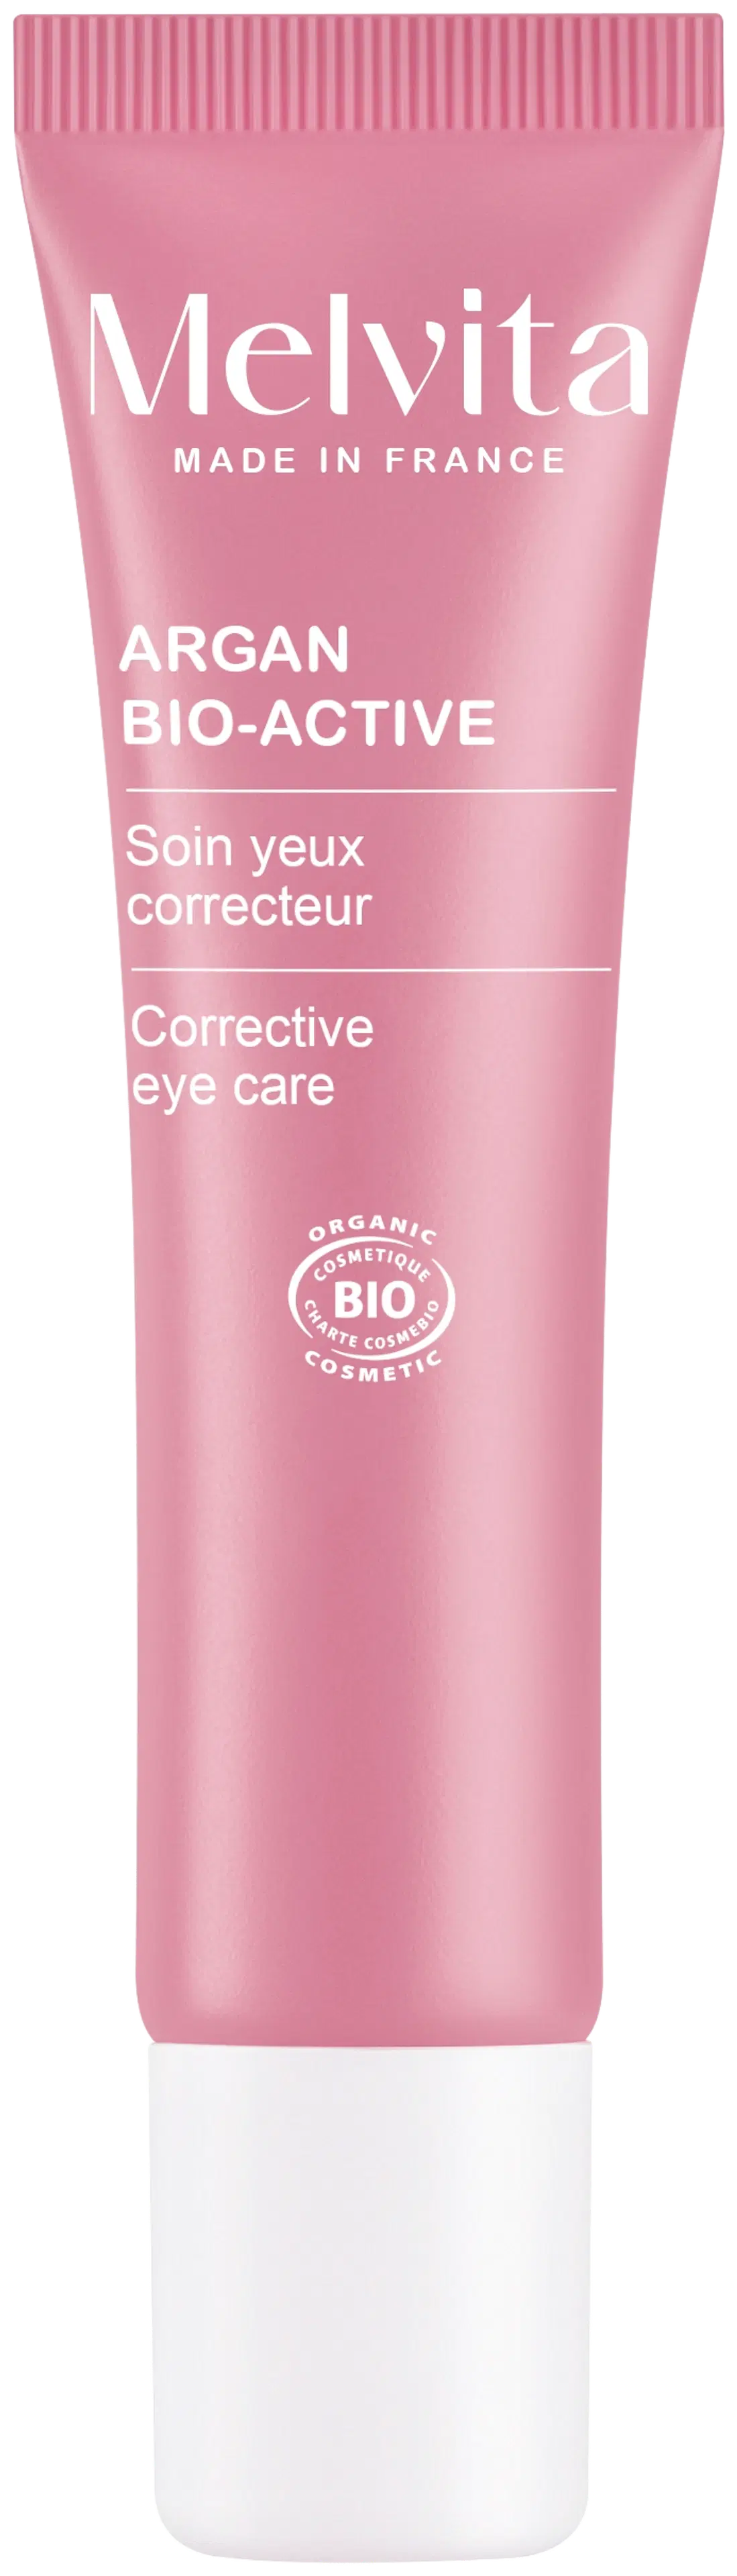 Melvita Argan Bio-active Corrective eye care silmänympärysvoide 15 ml